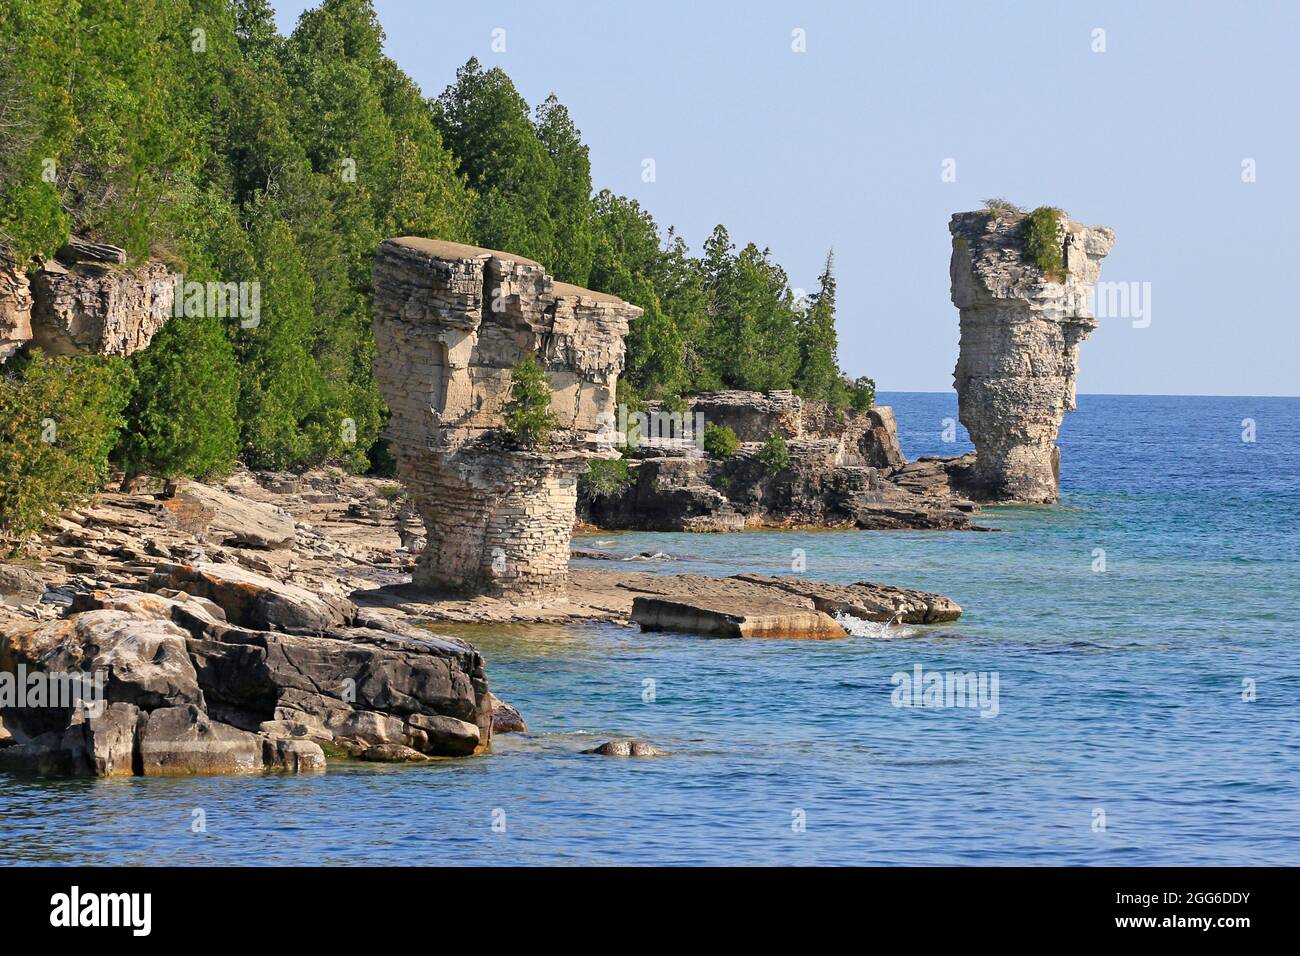 Los dos pilares rocosos se elevan desde las aguas de Georgian Bay en la isla Flowerpot en el Parque Marino Nacional Fathom Five, Lake Huron, Canadá Foto de stock